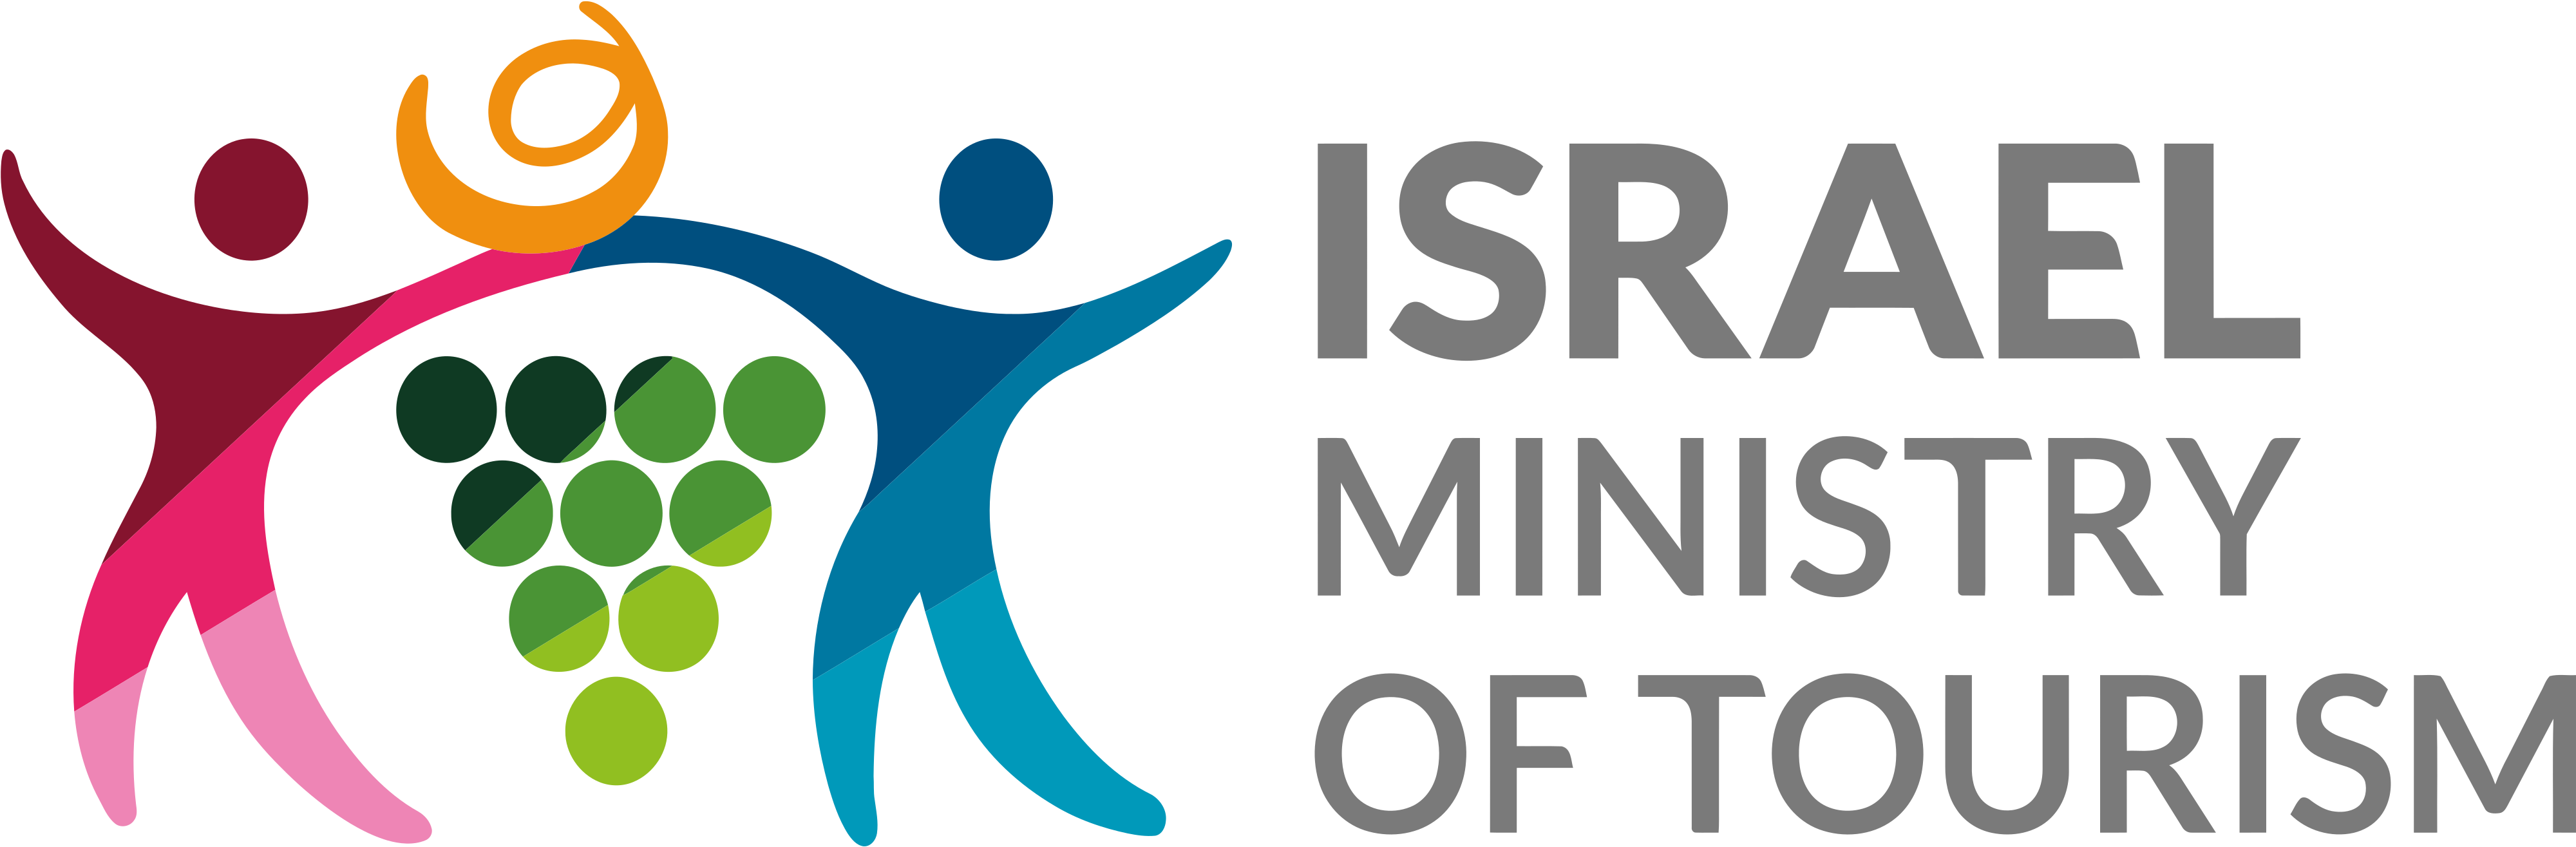 logos tour izrael